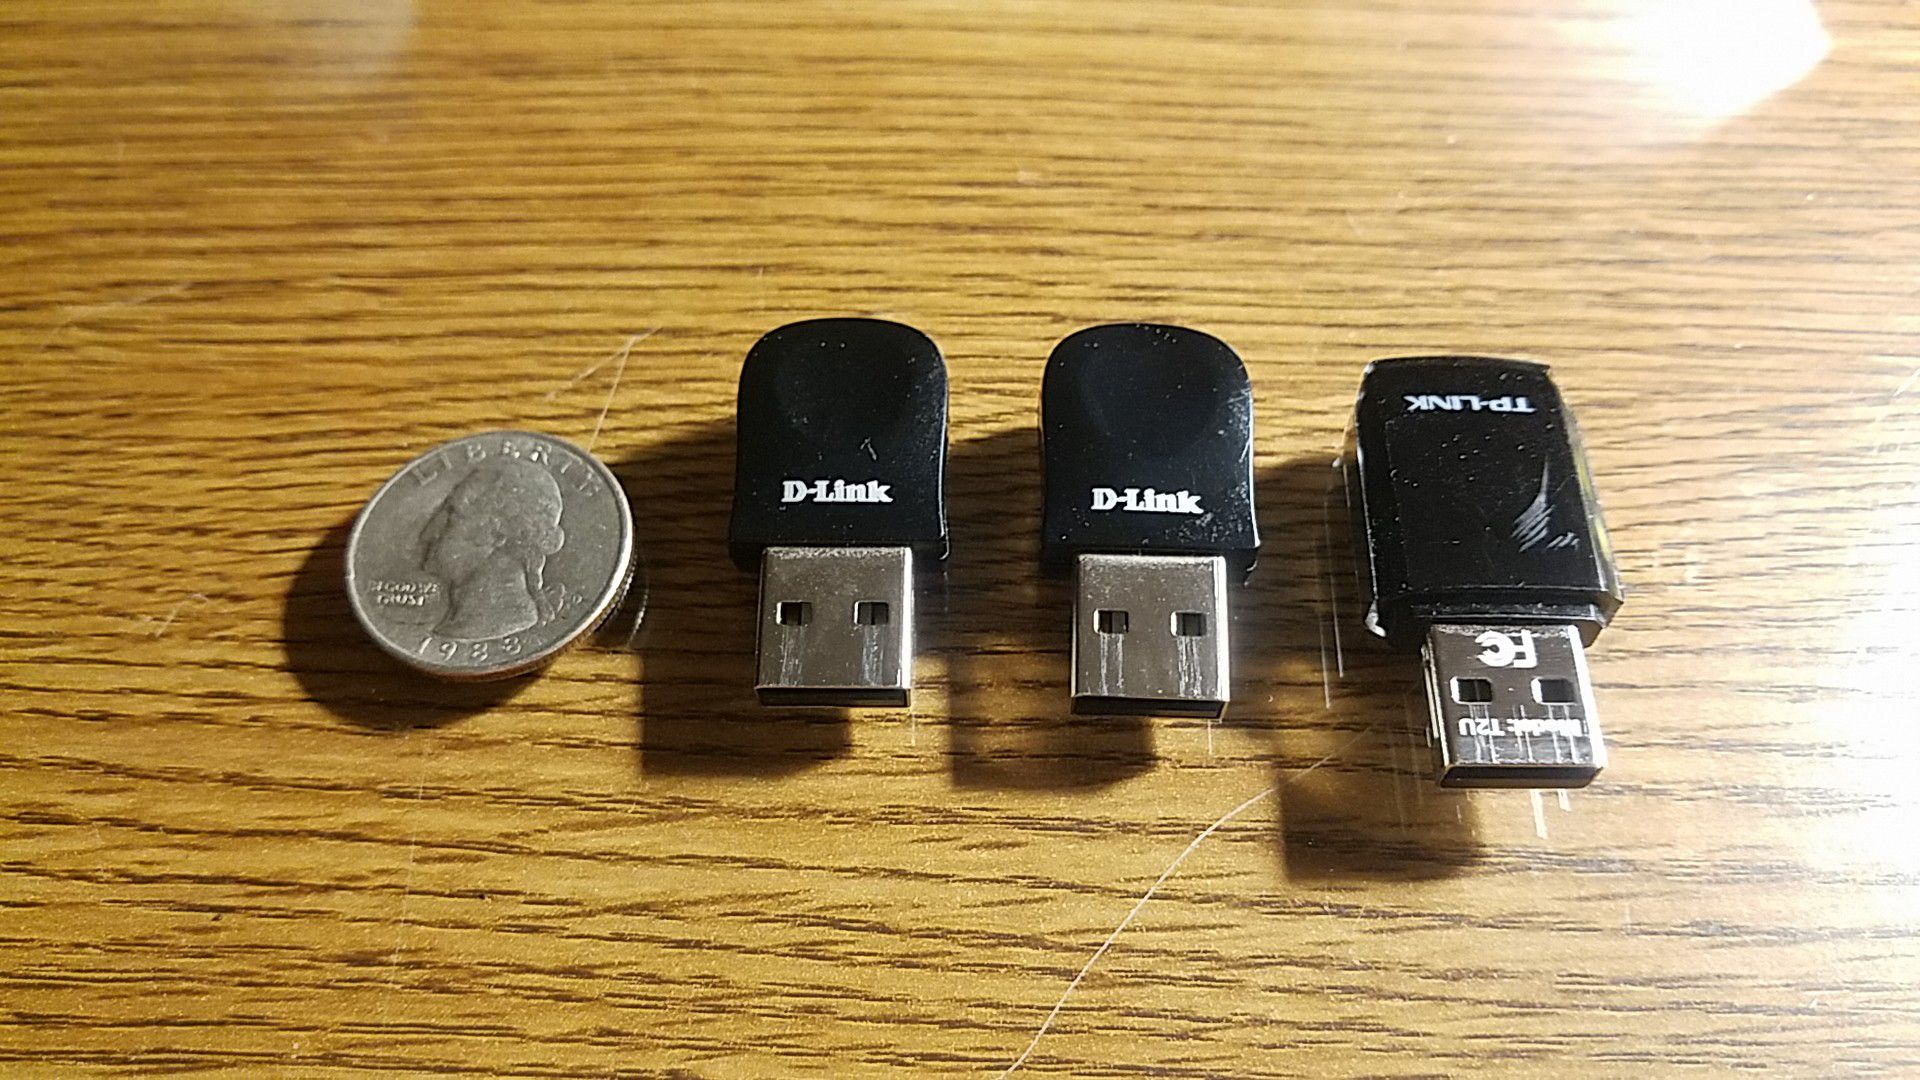 USB WI-FI adapters